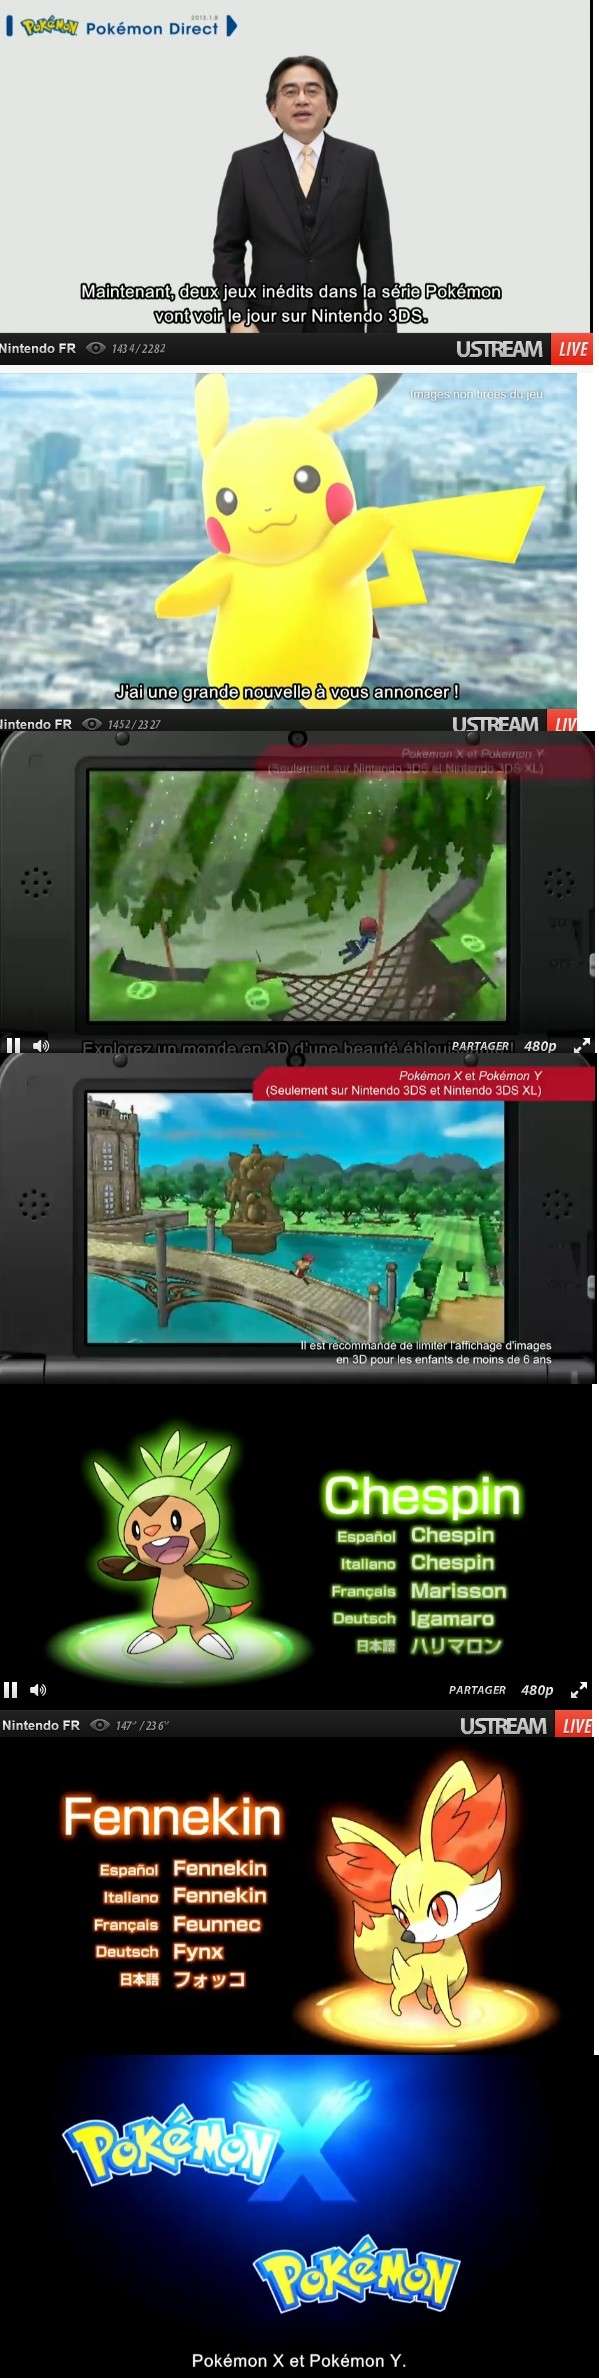 [Nintendo] Pokémon tout sur leur univers (Jeux, Série TV, Films, Codes amis) !! - Page 32 Pokemo10